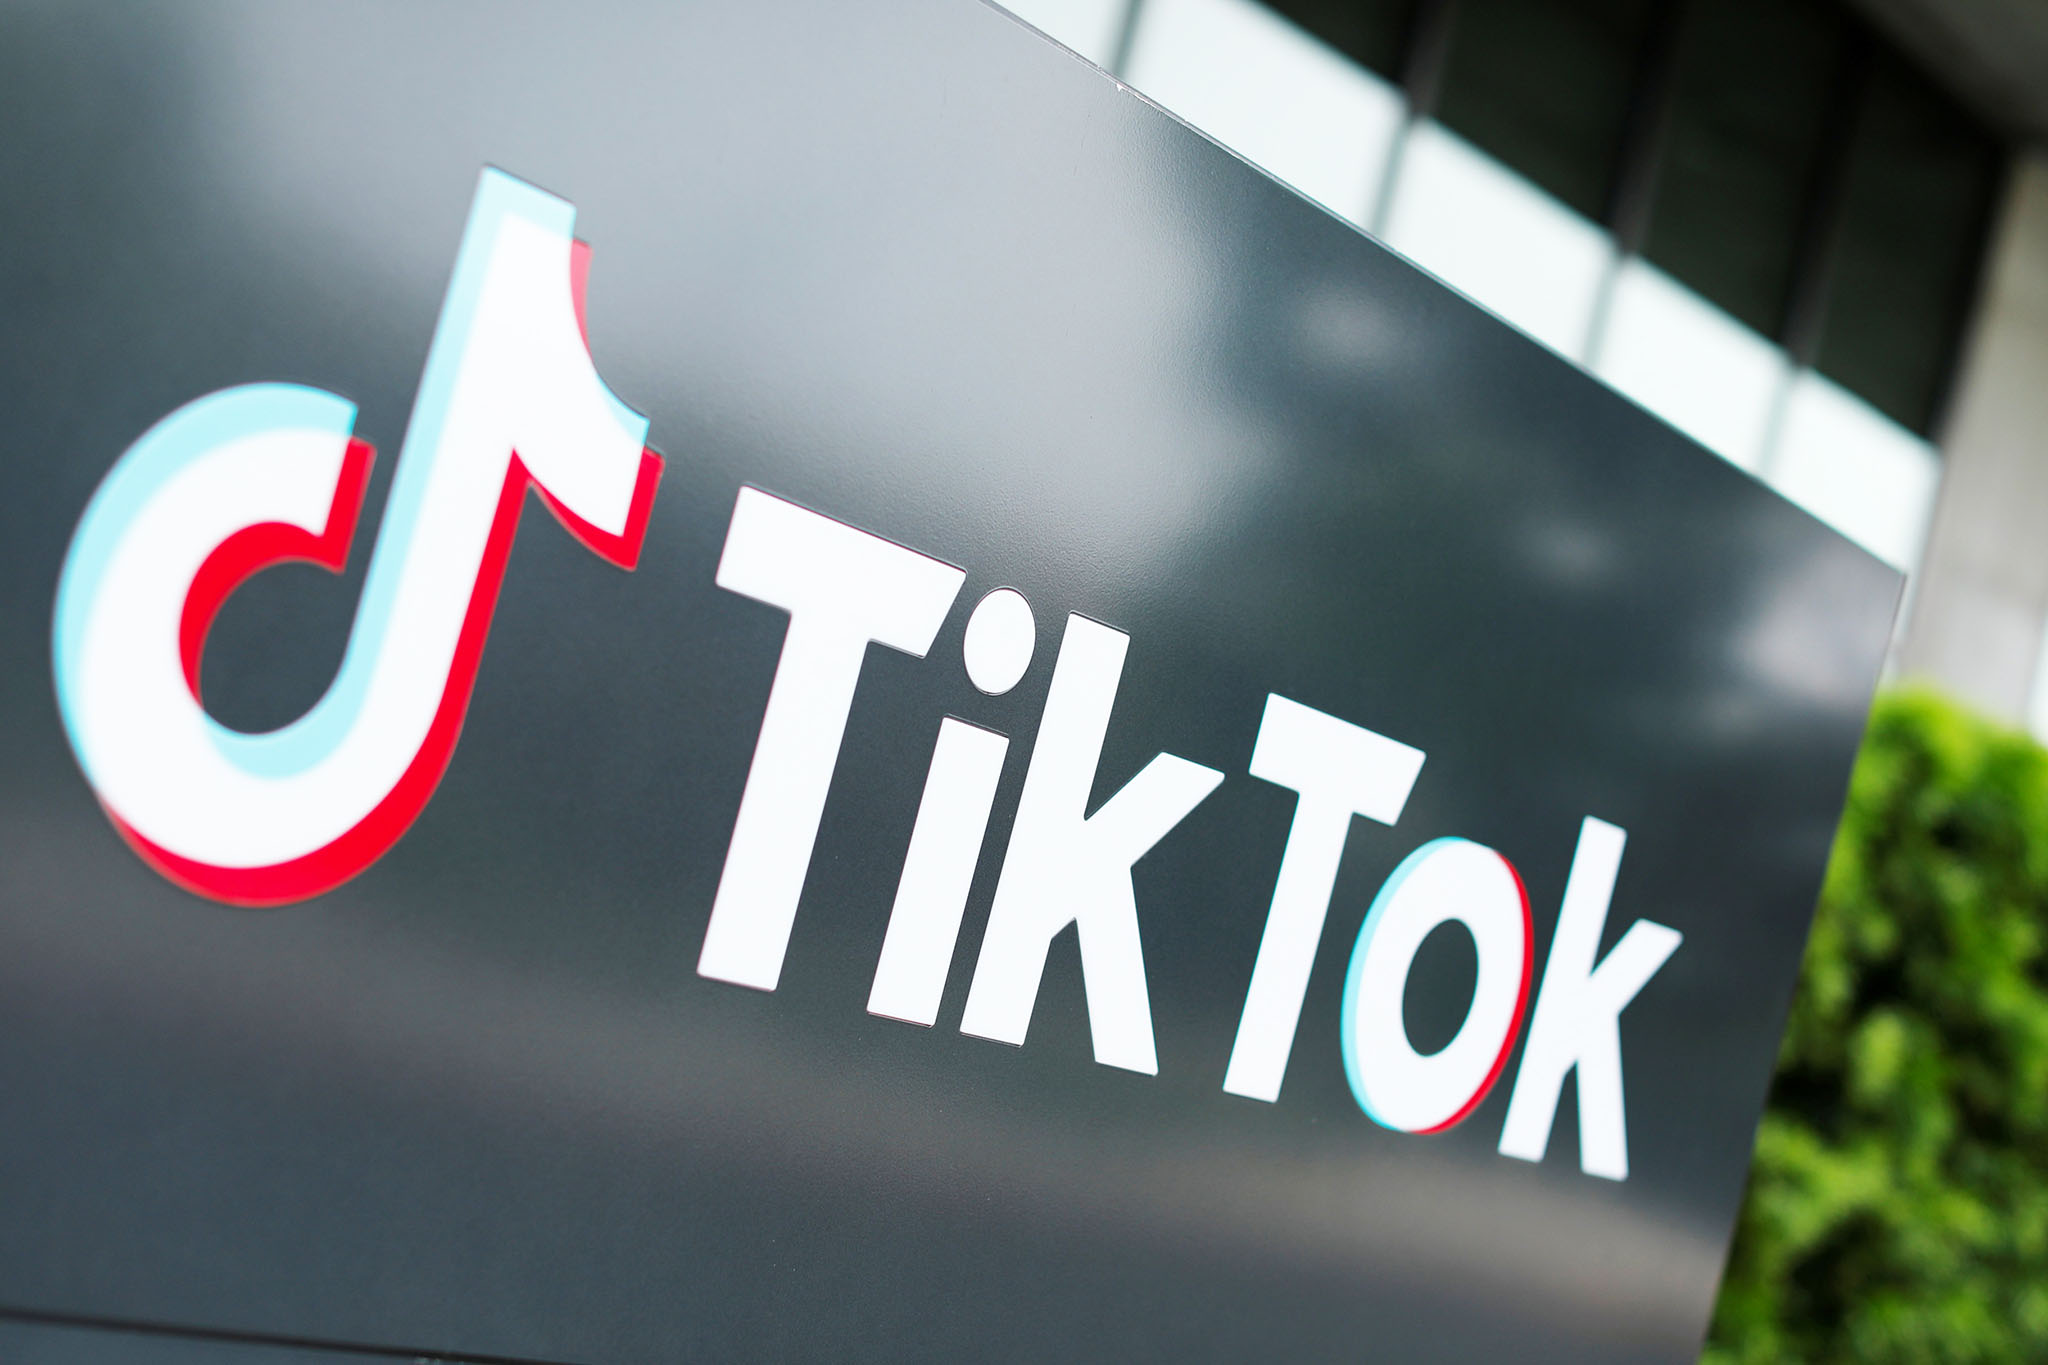 Con gái tử vong vì làm theo thử thách trên TikTok, một người mẹ nộp đơn khởi kiện